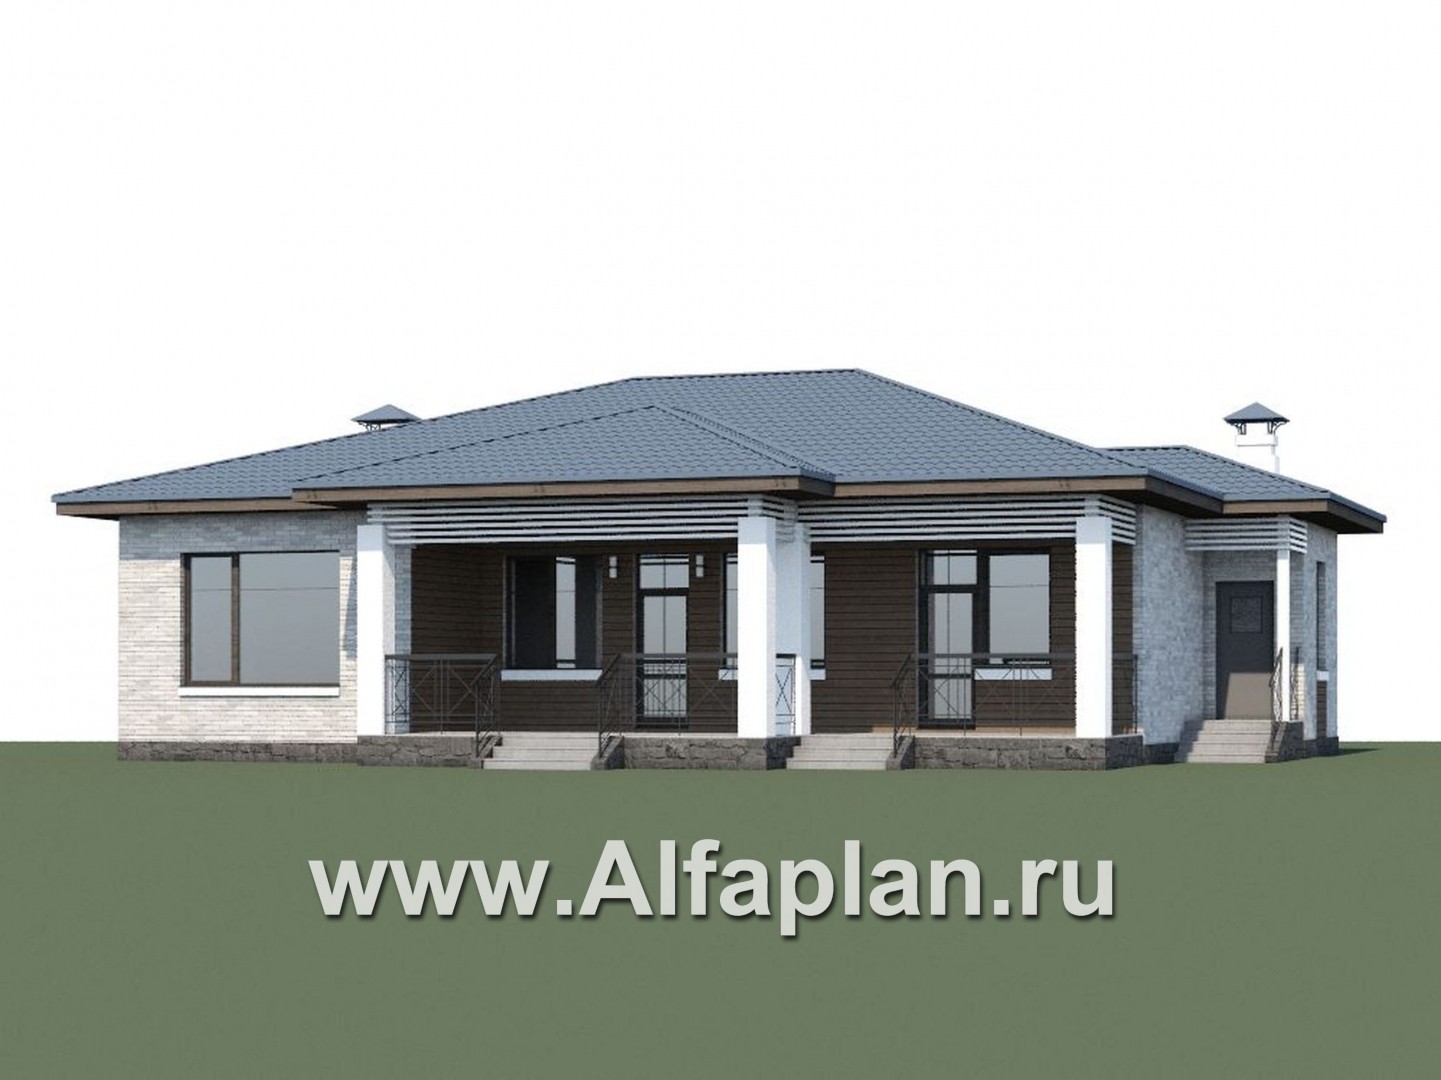 Проекты домов Альфаплан - «Калипсо» - комфортабельный одноэтажный дом  с вариантами планировки - дополнительное изображение №1